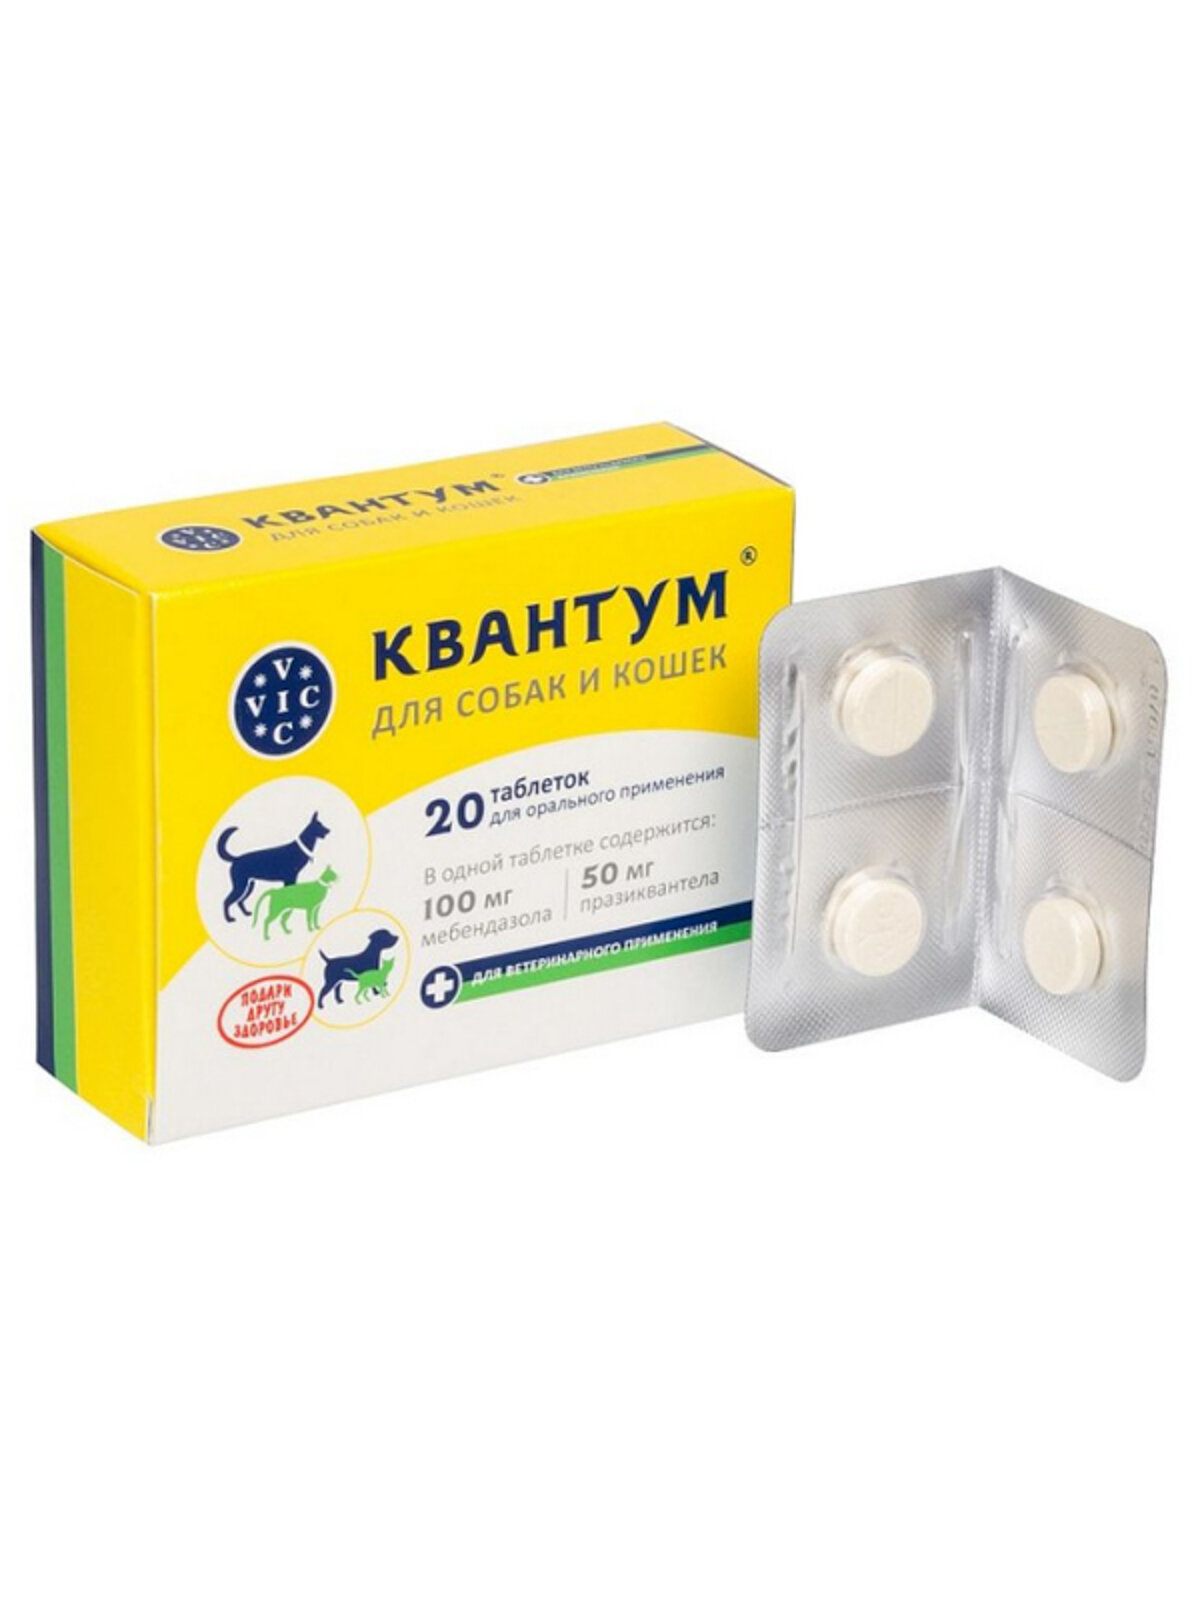 Квантум антигельминтный препарат для собак и кошек (1 т 5-10 кг веса) упаковка 20 таблеток